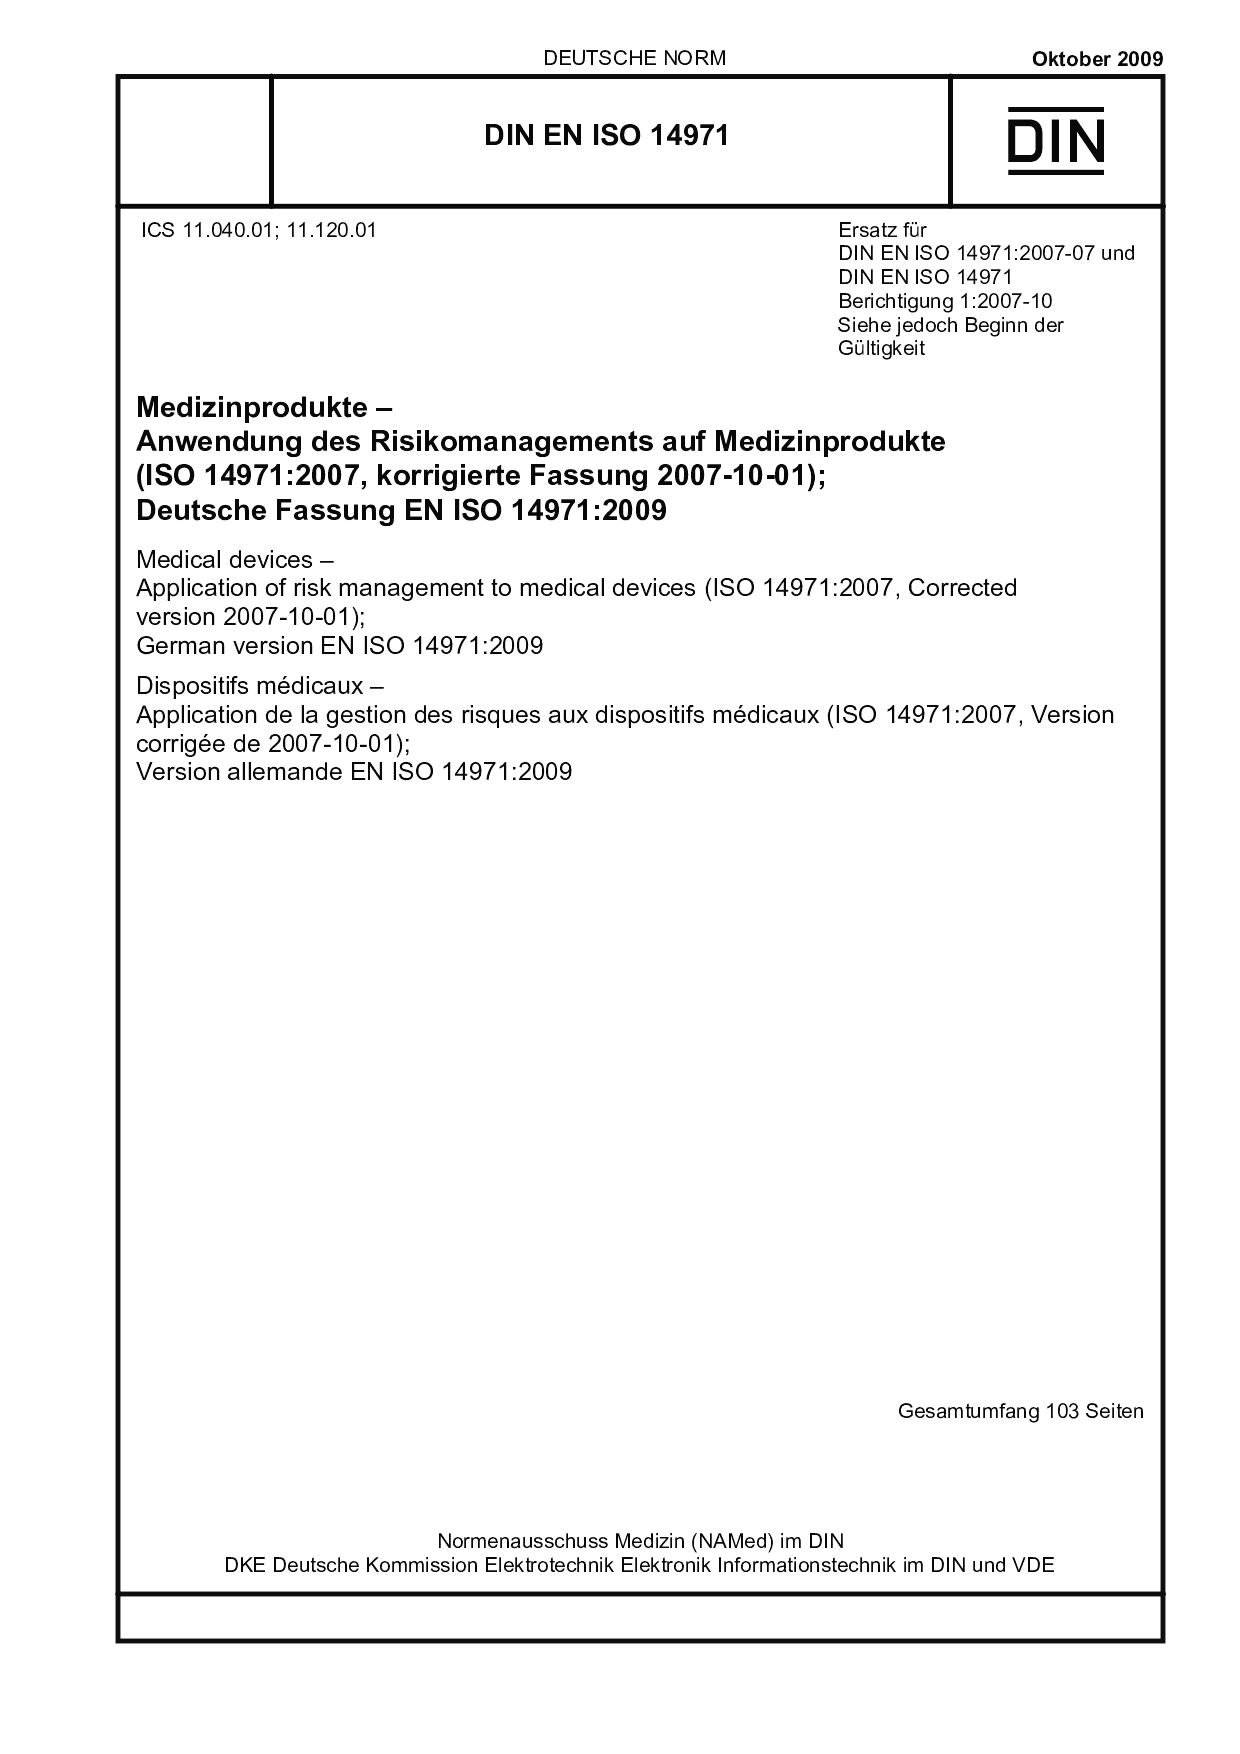 DIN EN ISO 14971:2009封面图